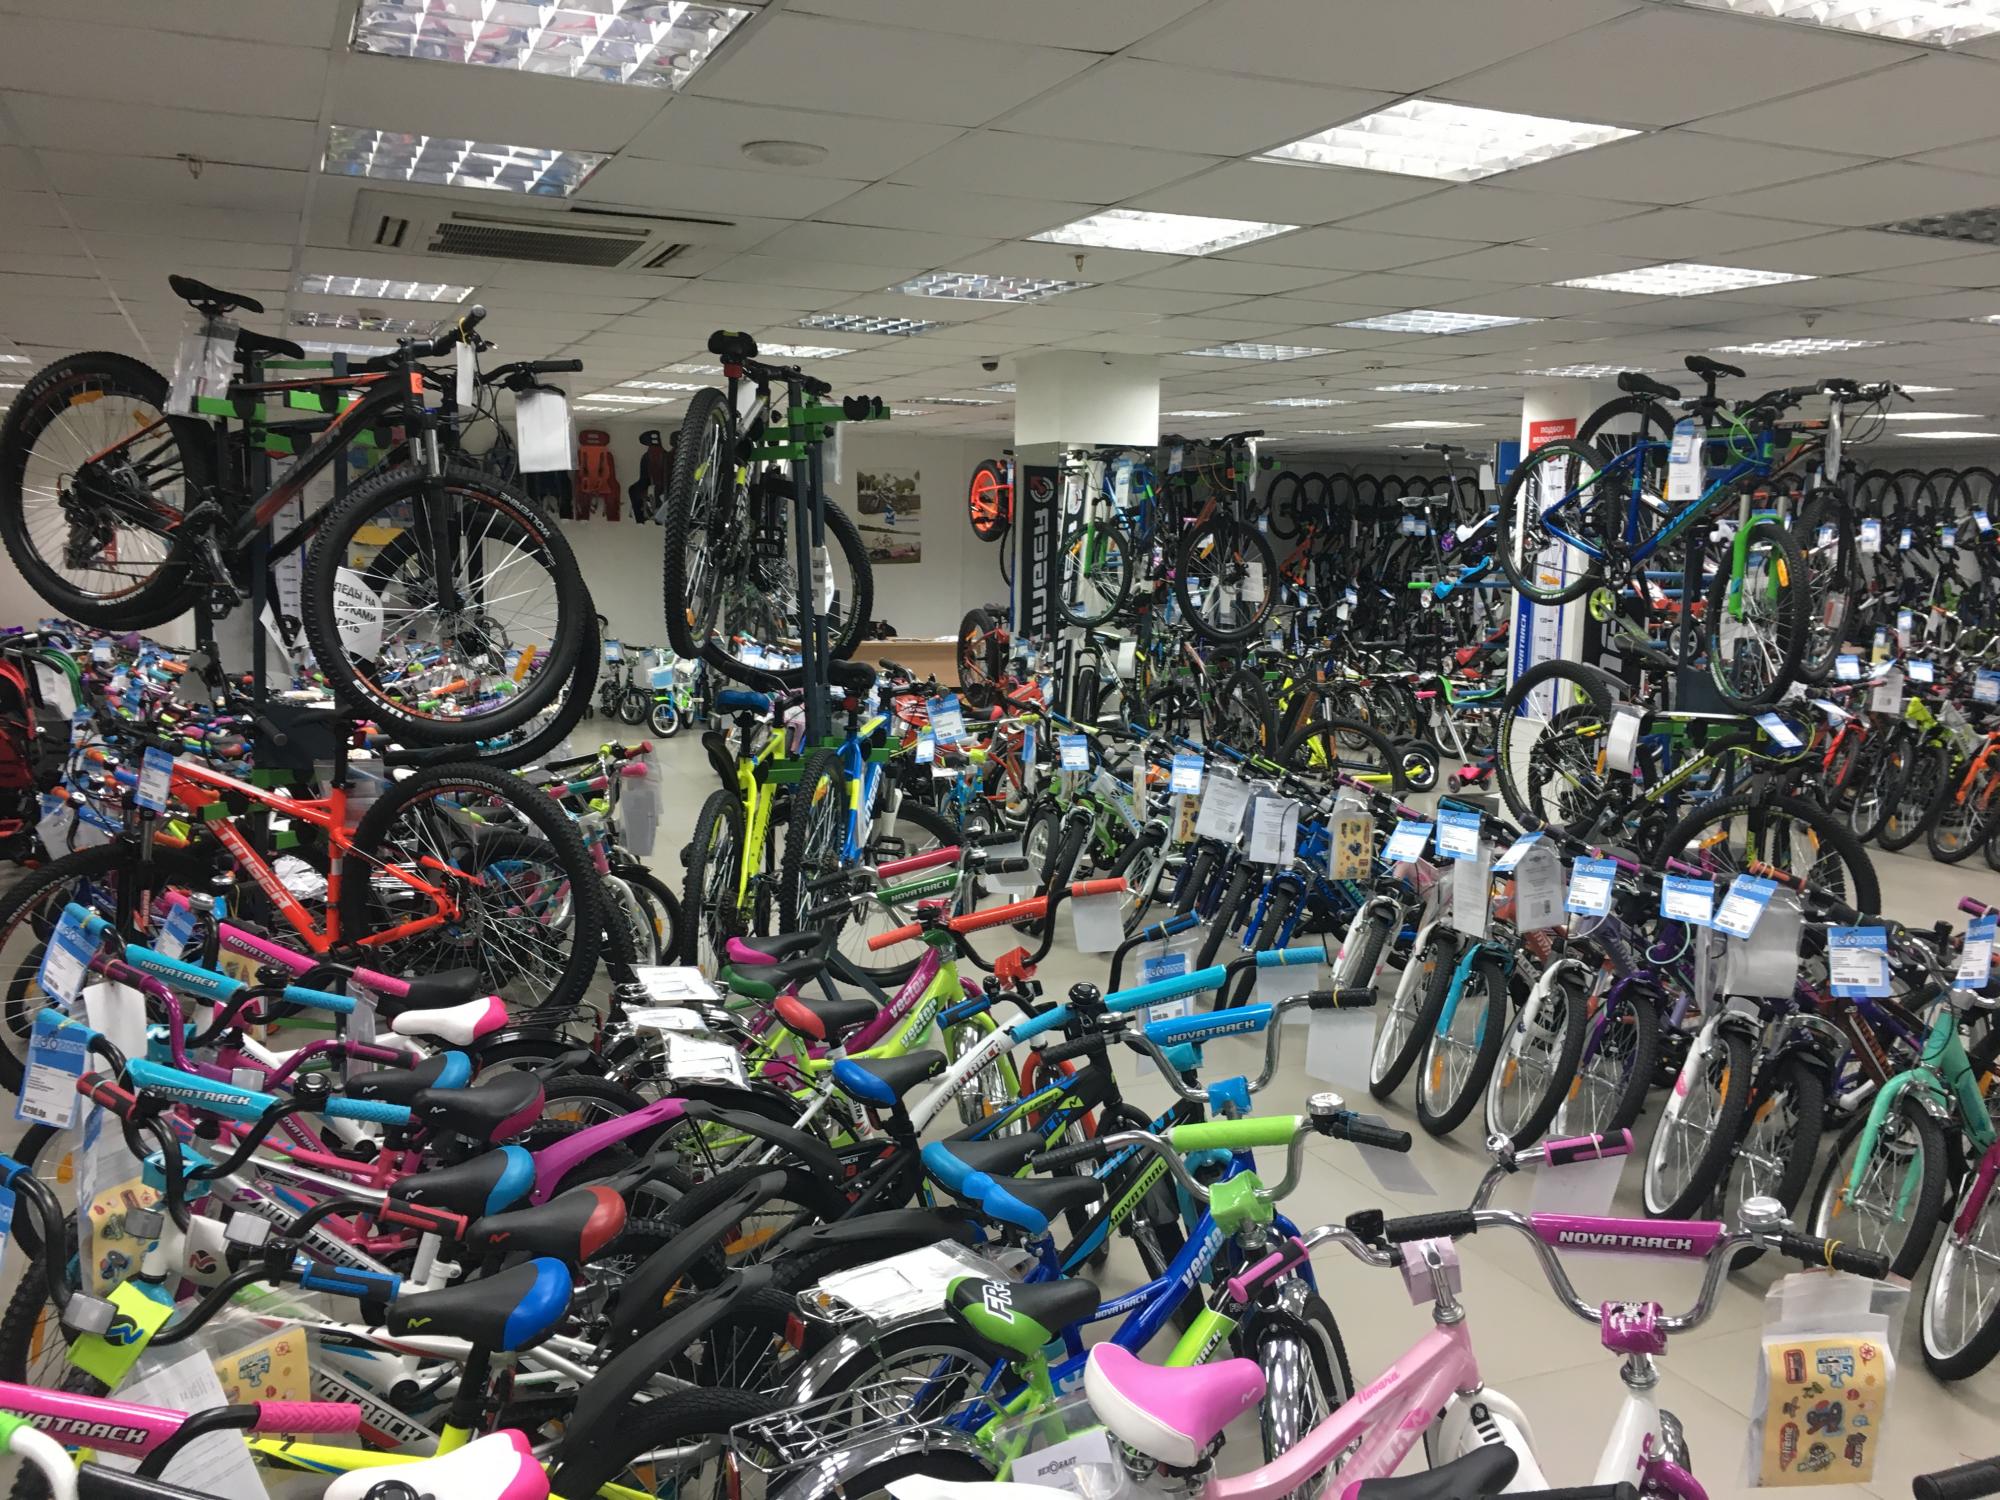 Велосипеды Улан Удэ Купить Цены Магазины